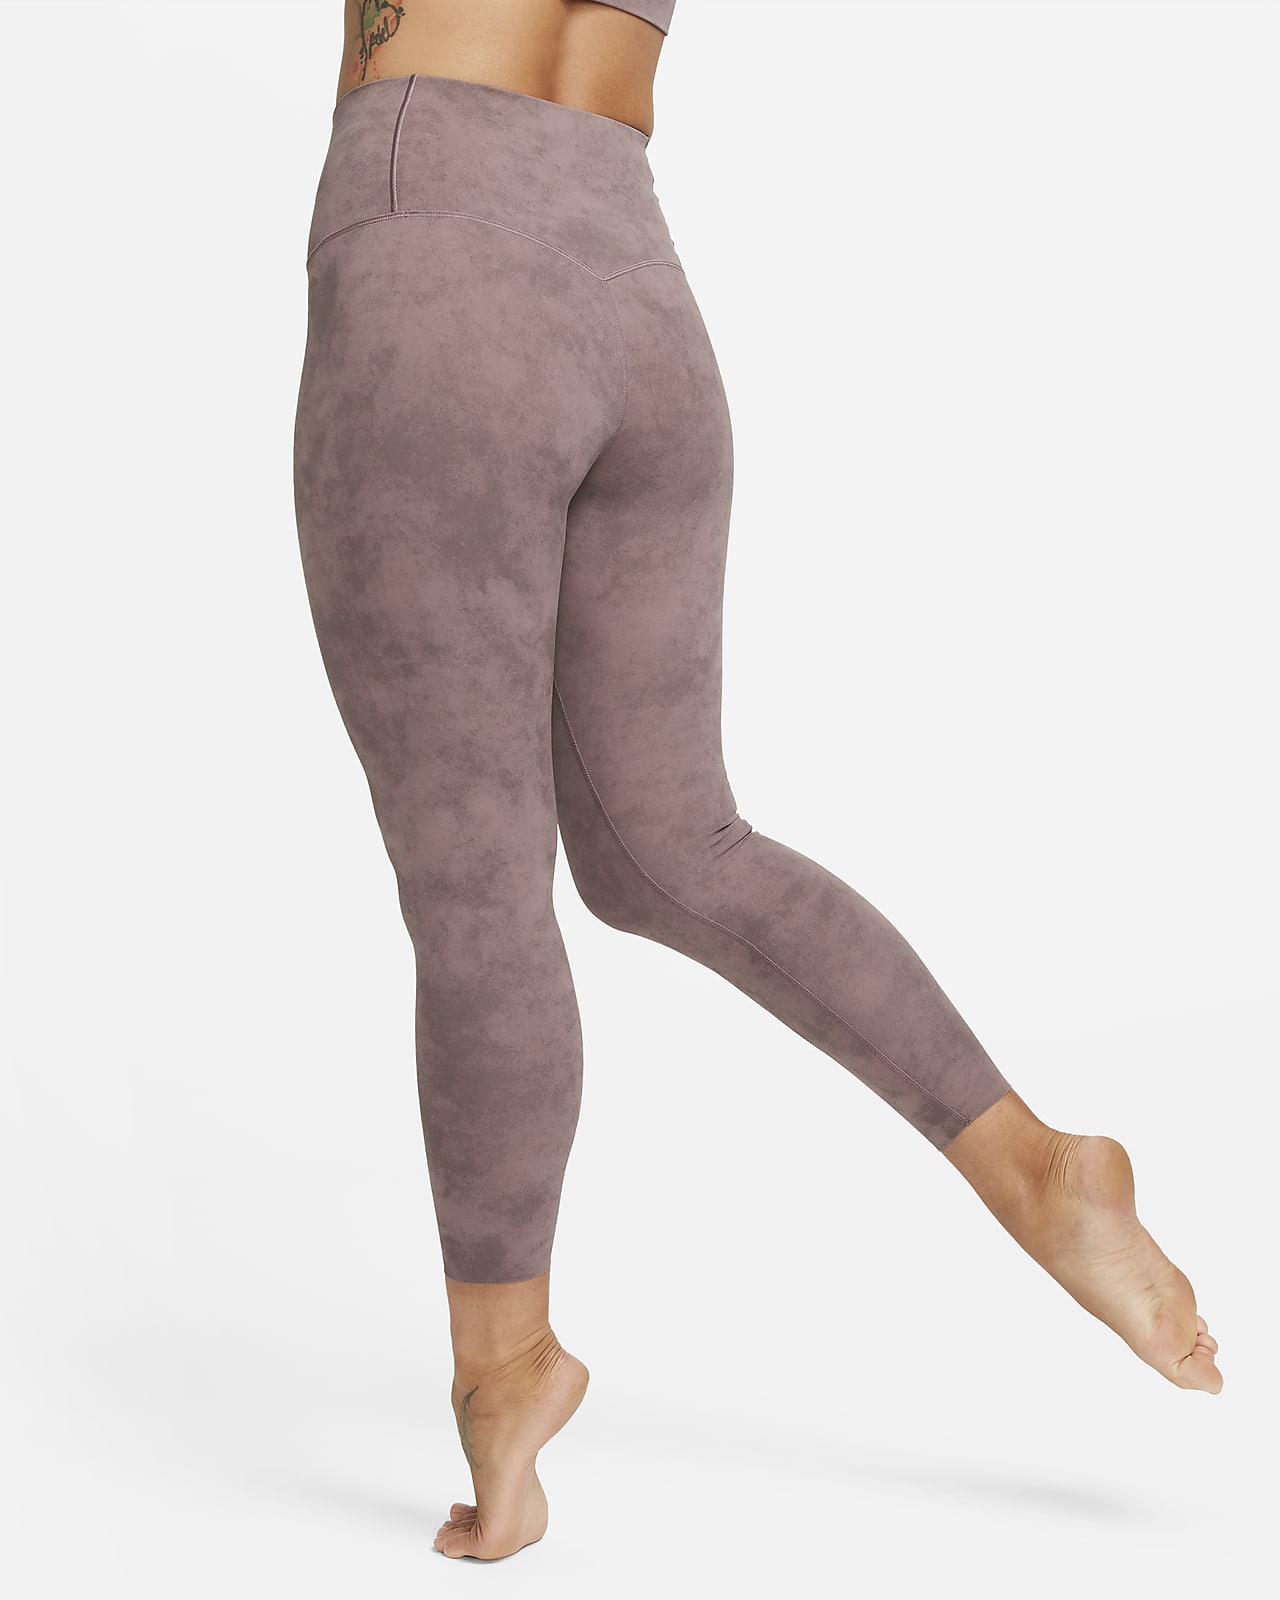 Legging 7/8 woman Nike Dri-Fit Zenvy HR - Baselayers - Textile - Handball  wear